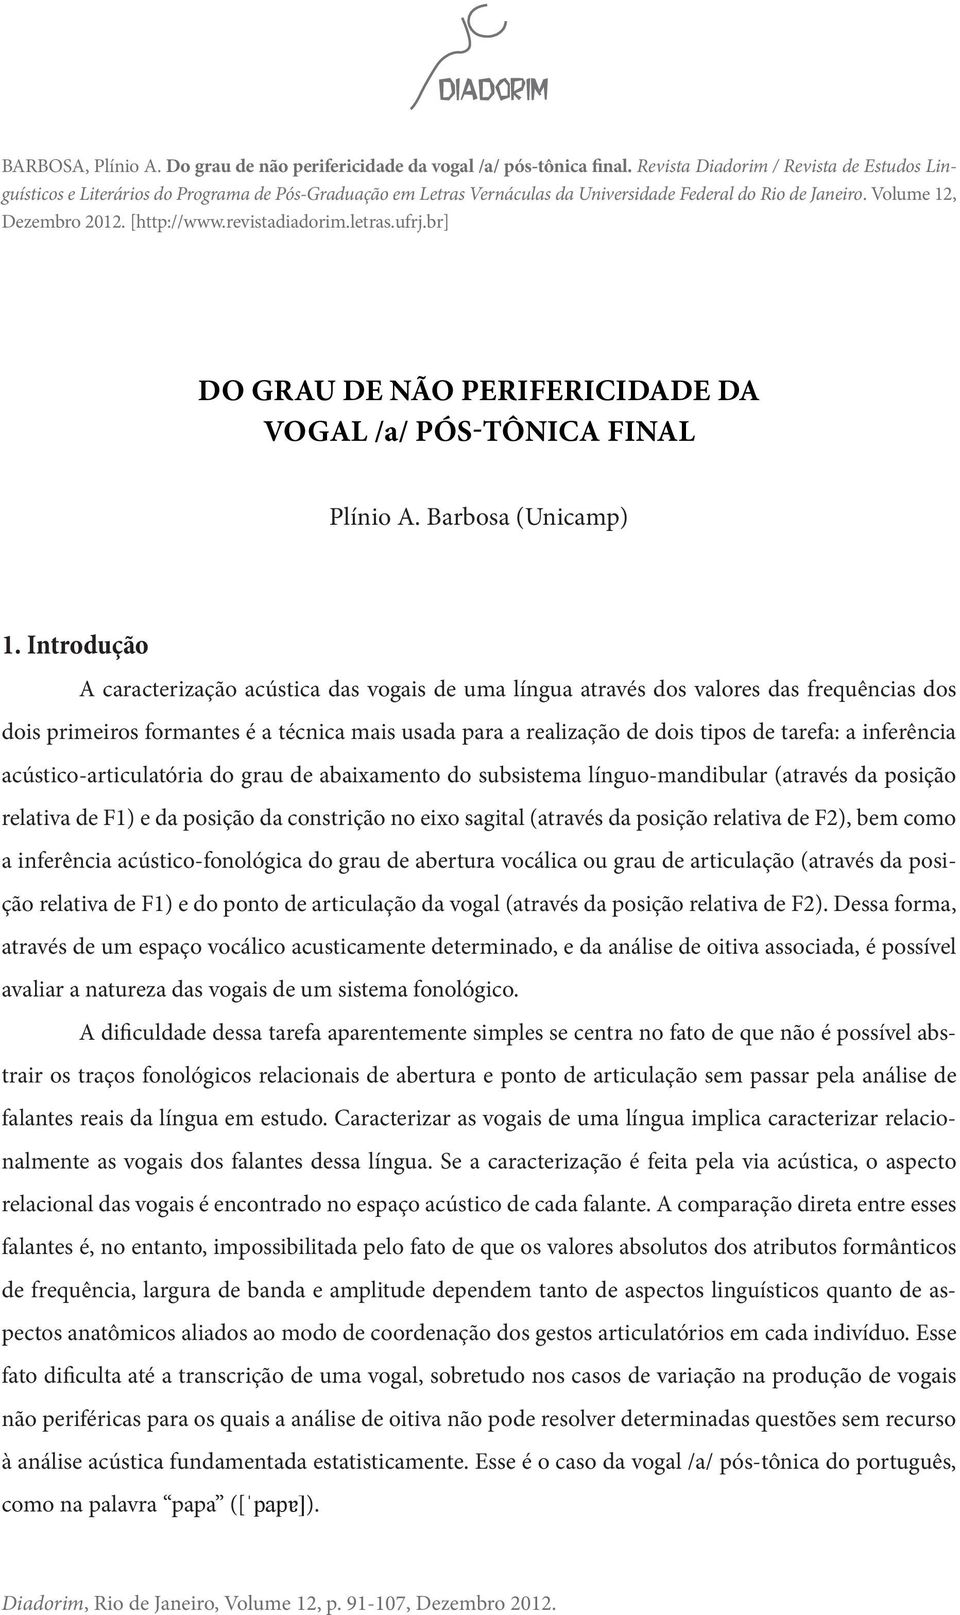 revistadiadorim.letras.ufrj.br] Do grau de não perifericidade da vogal /a/ pós-tônica final Plínio A. Barbosa (Unicamp) 1.